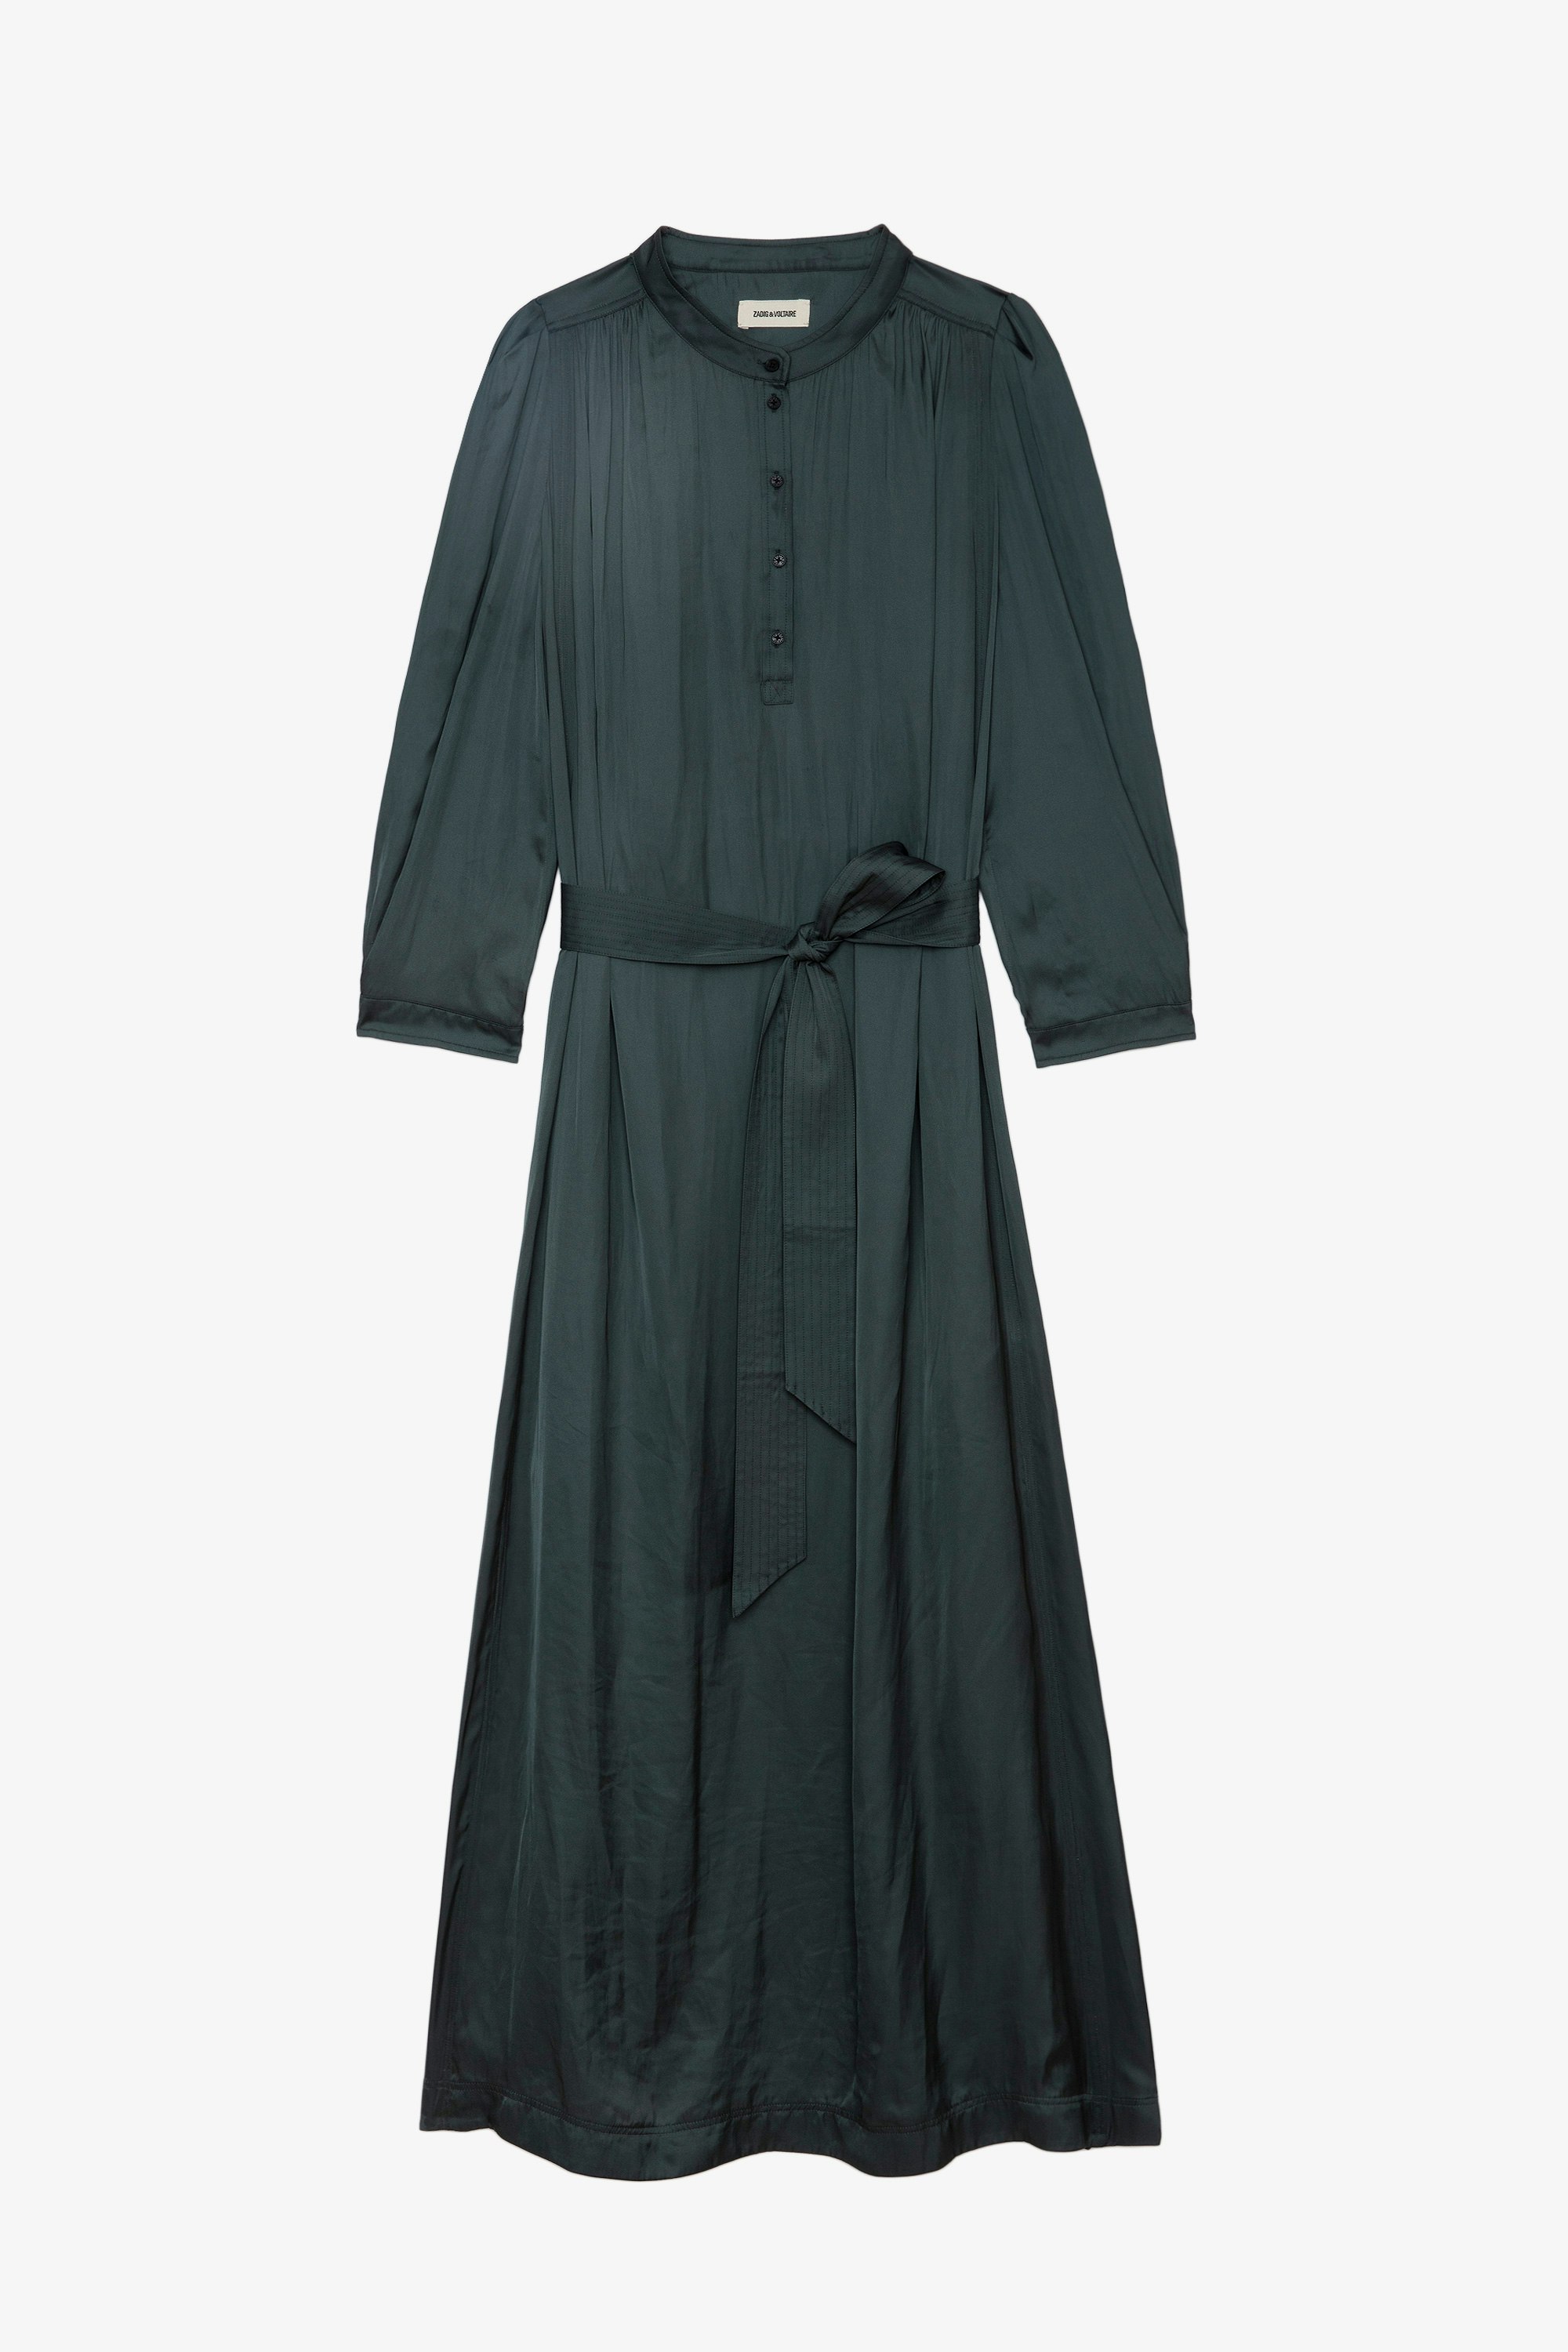 Kleid Ritchil Satin - Langes, schwarzes Satinkleid mit 3/4-Ärmeln und Raffungen zum Binden an der Taille.